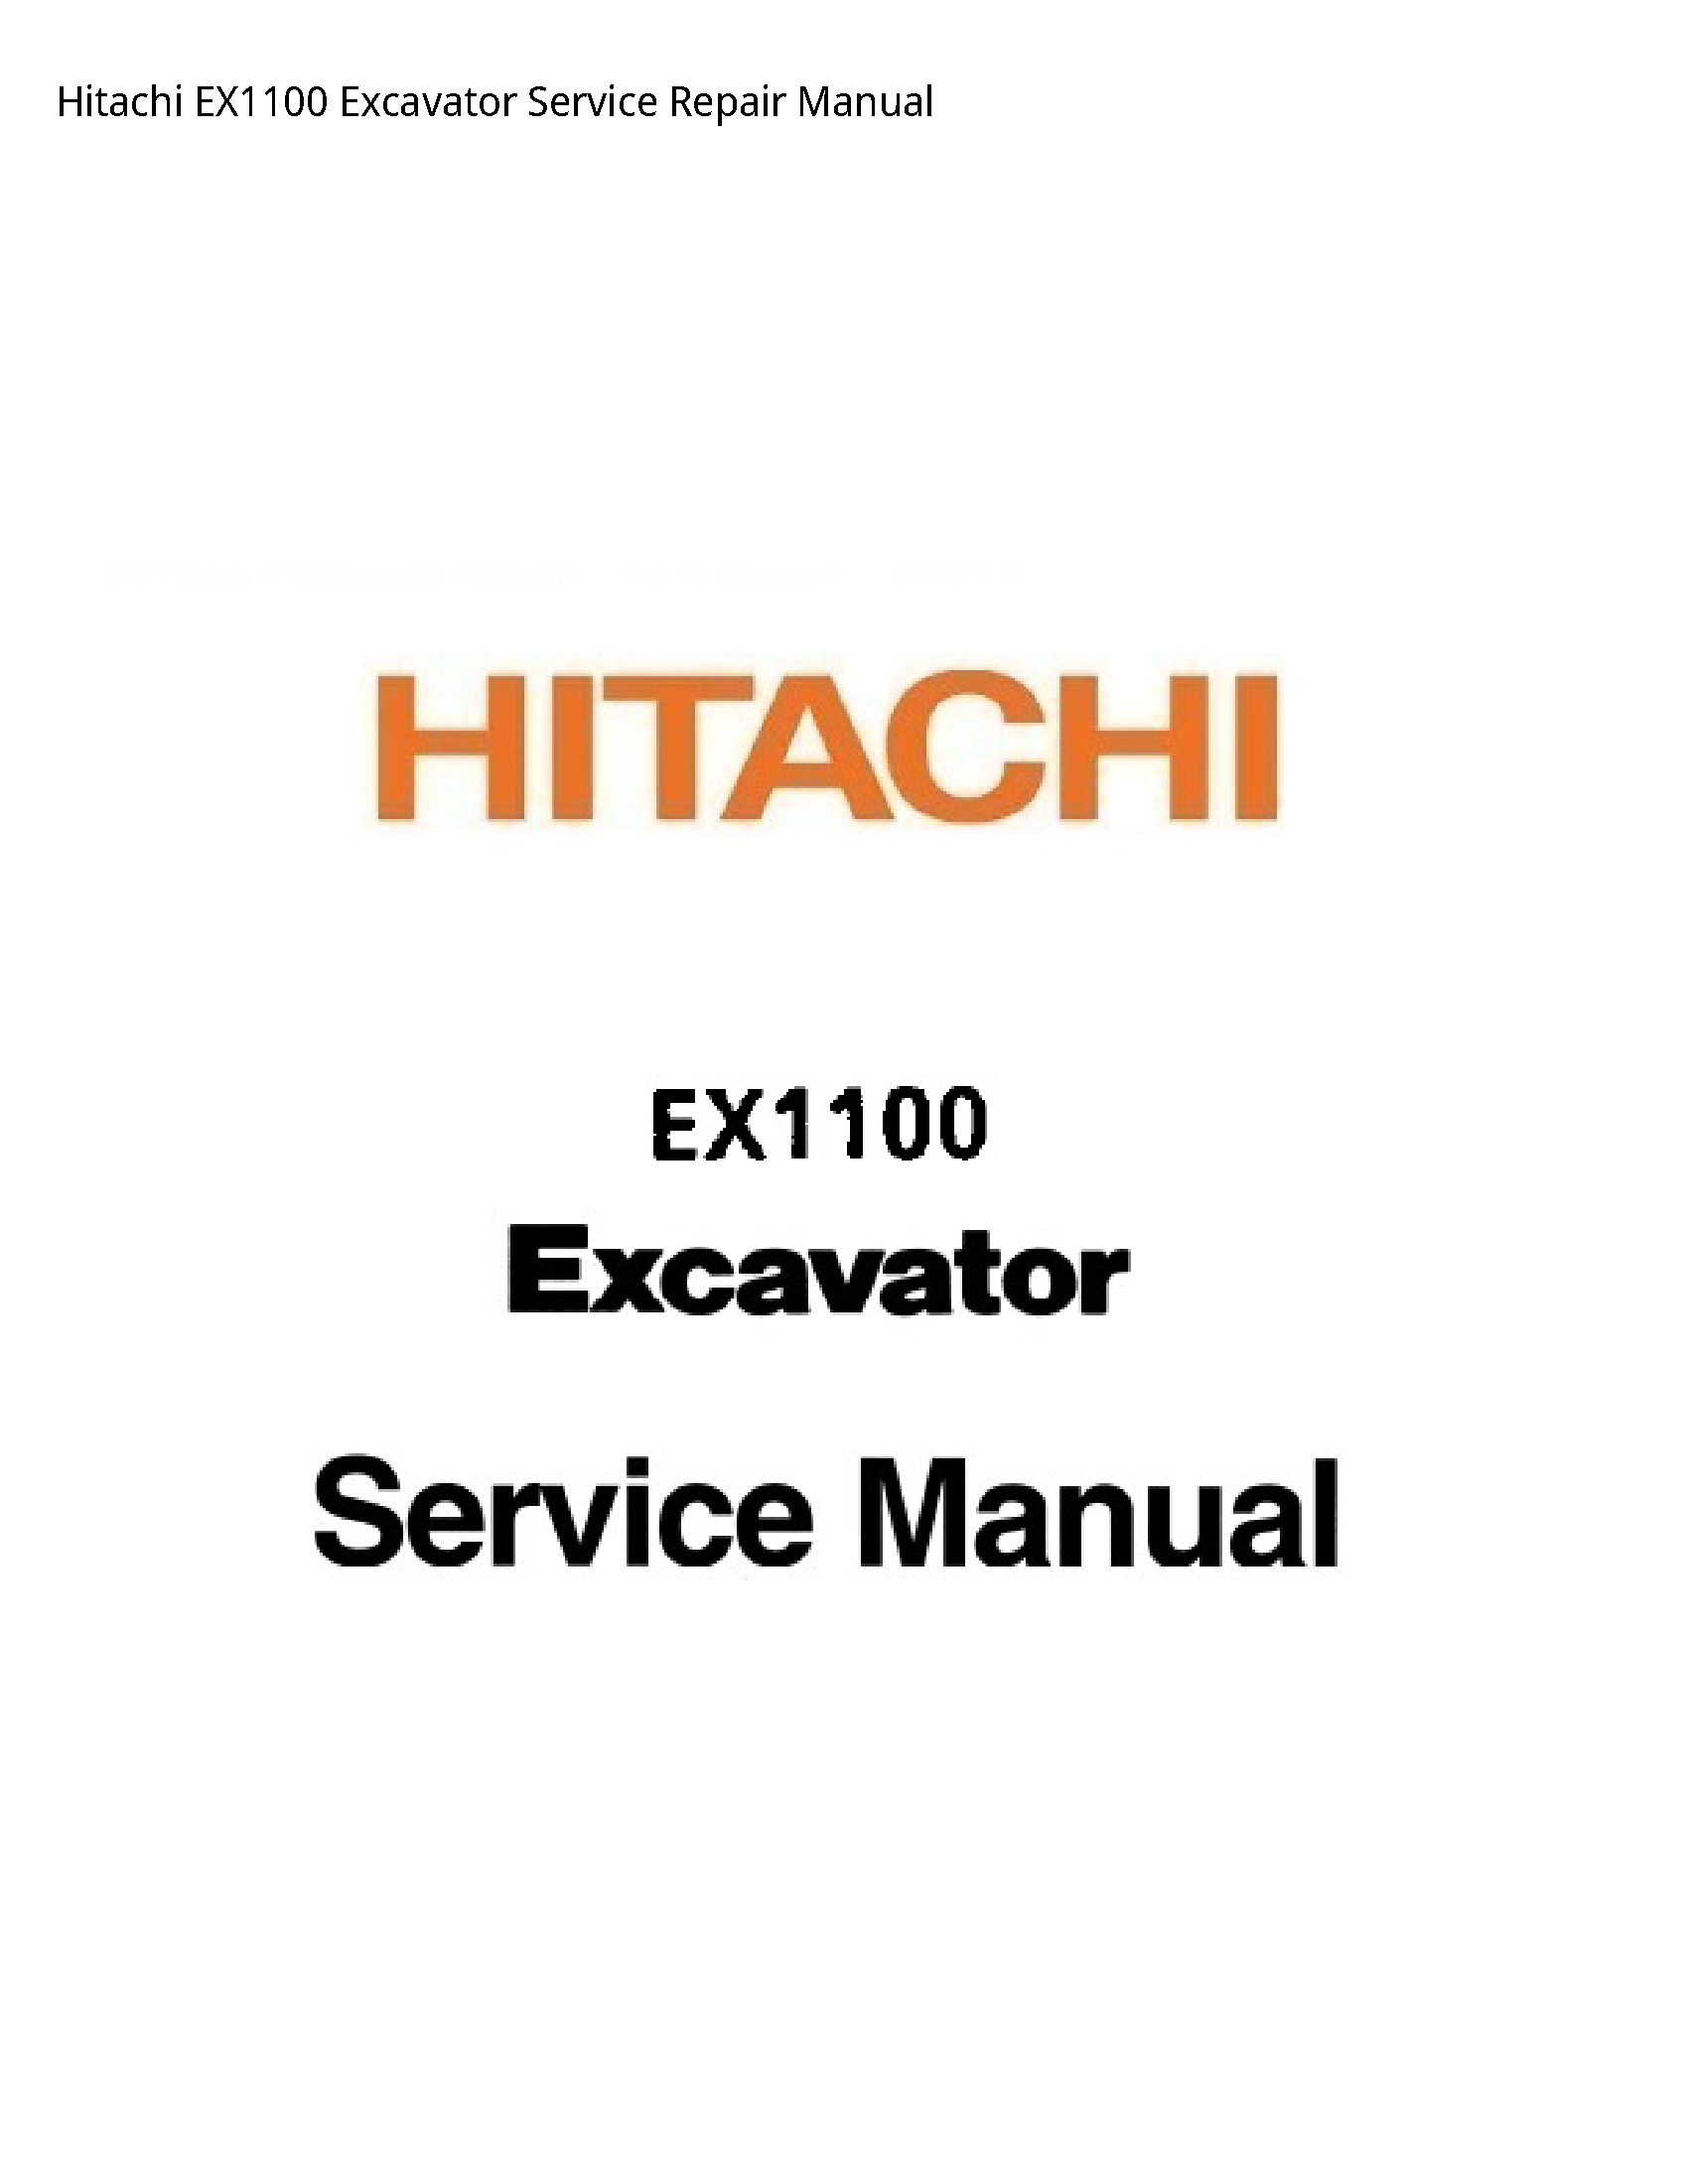 Hitachi EX1100 Excavator manual